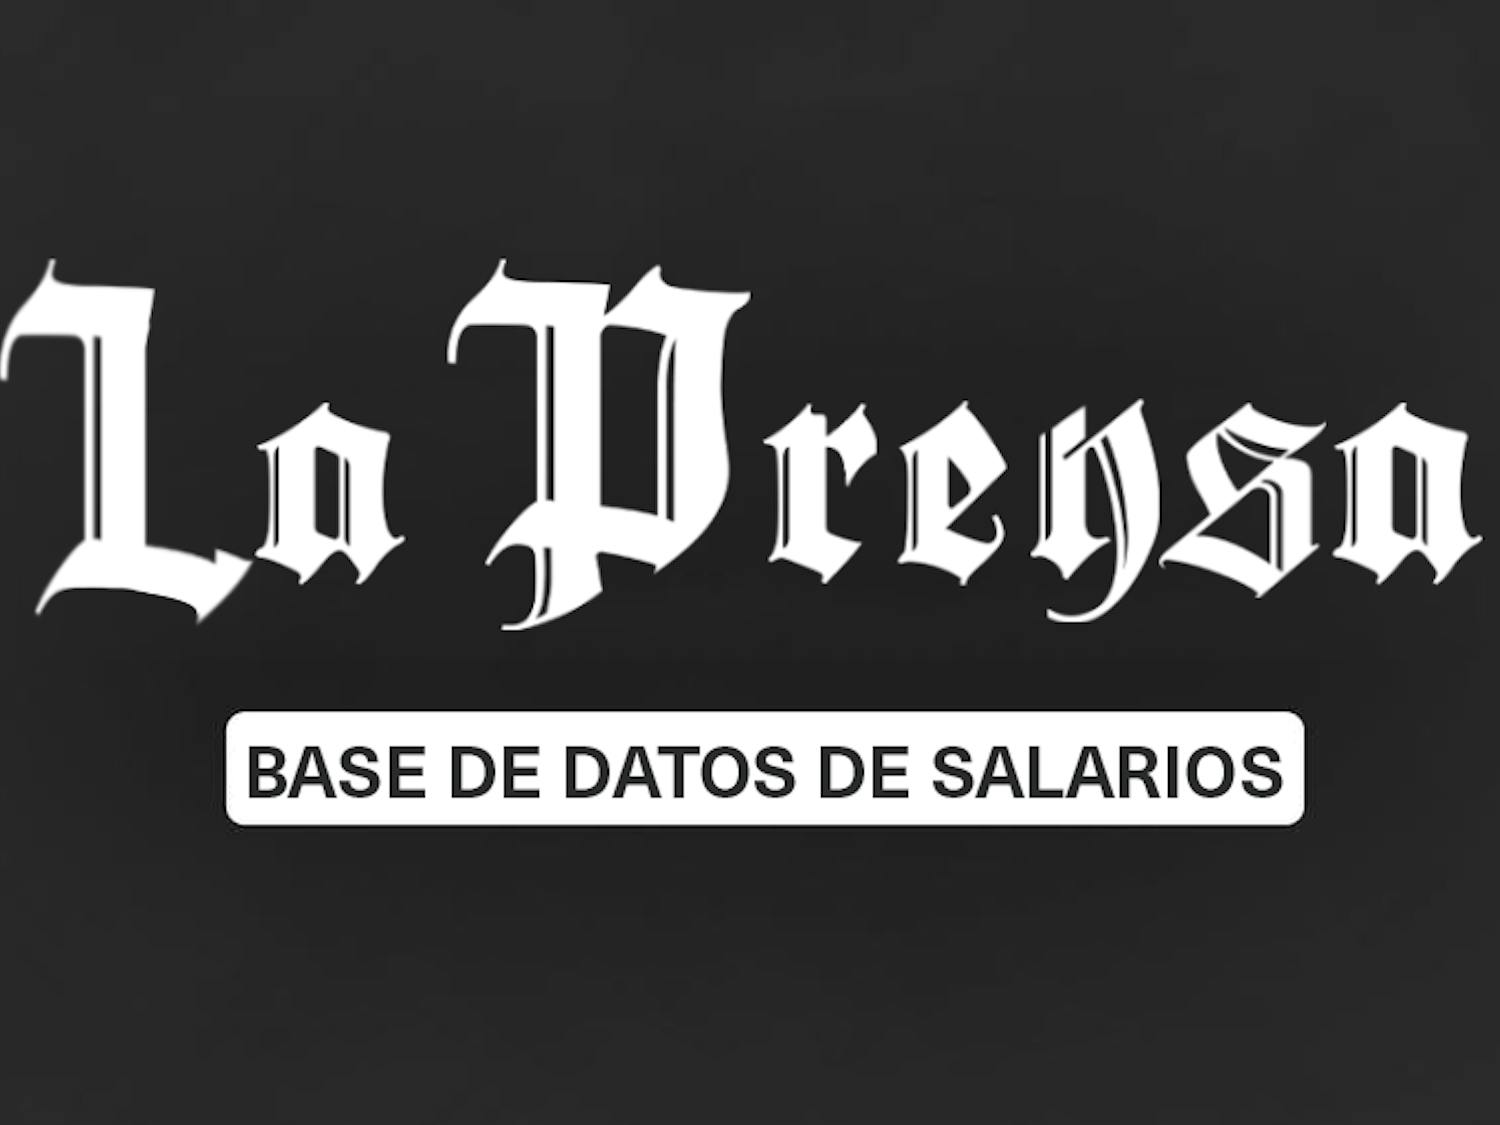 La Prensa Rast.png 2.png